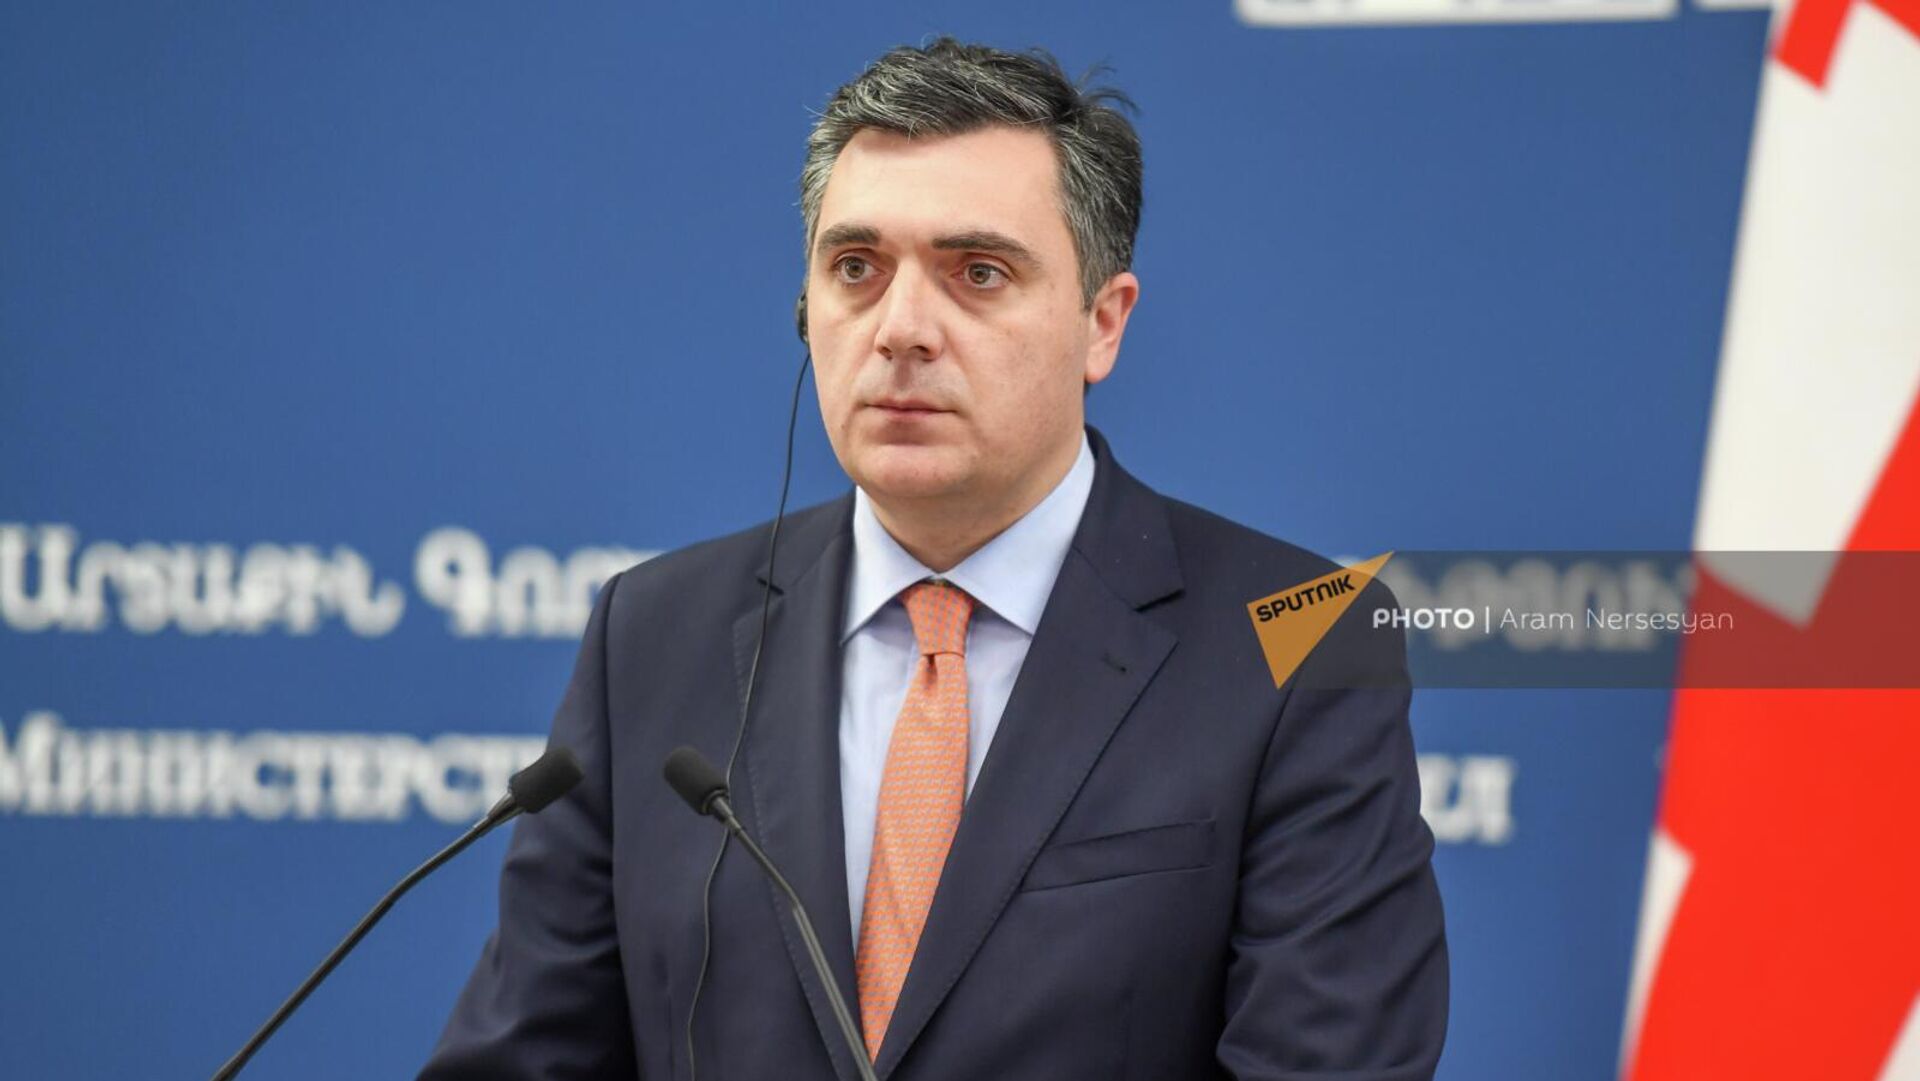  Грузия выразила готовность способствовать диалогу Армении и Азербайджана 